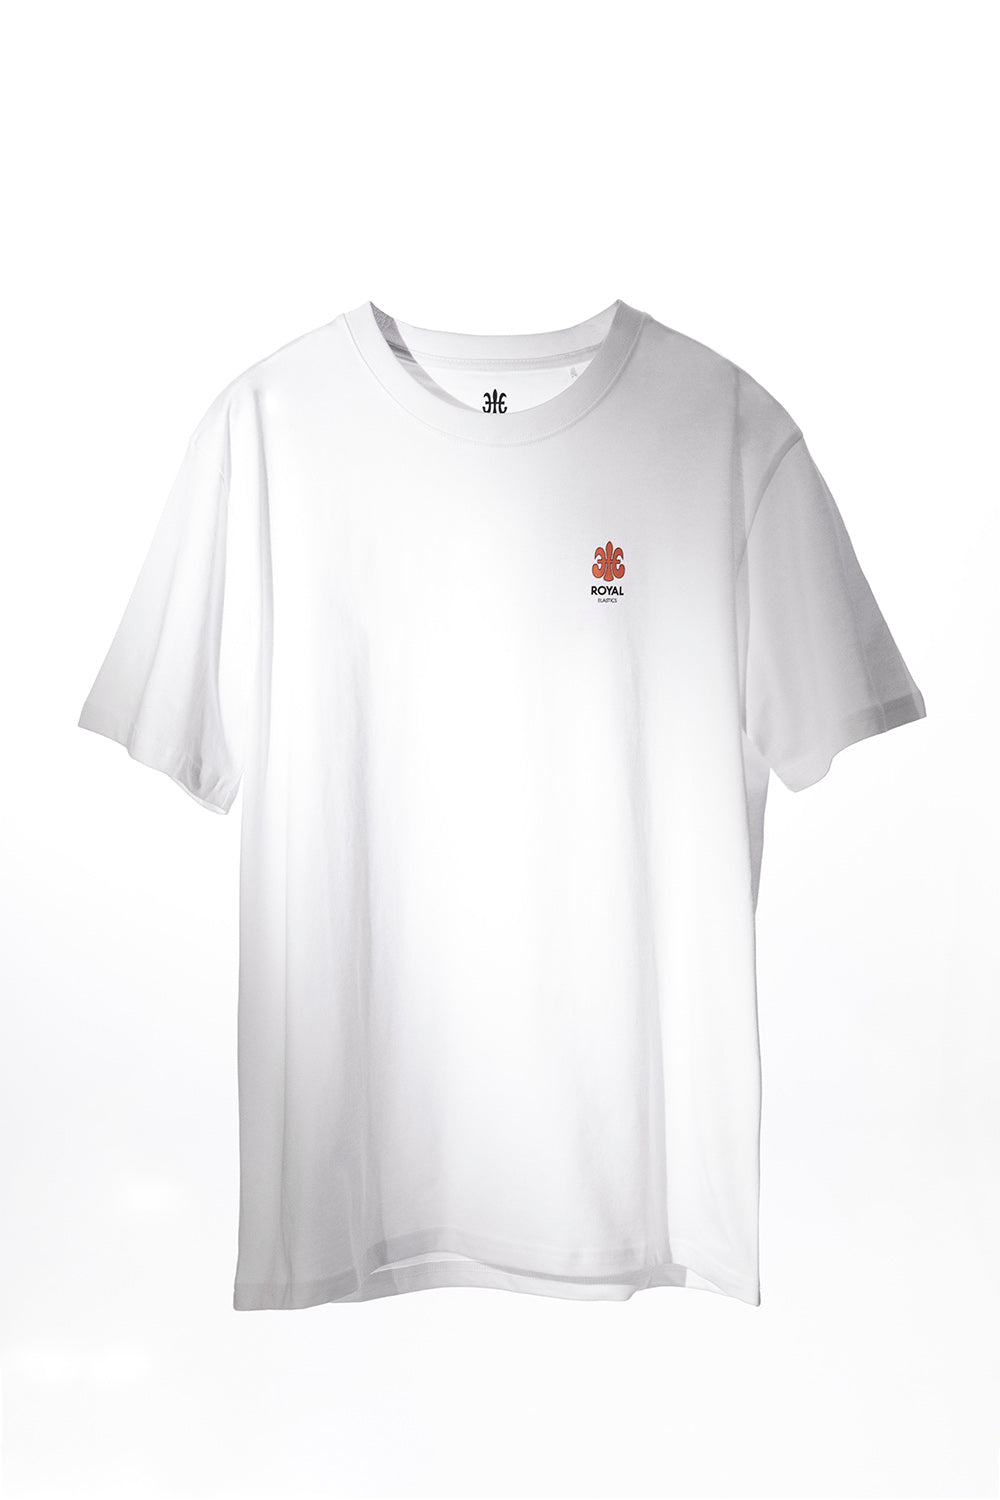 ロゴTシャツ 白 (Unisex)